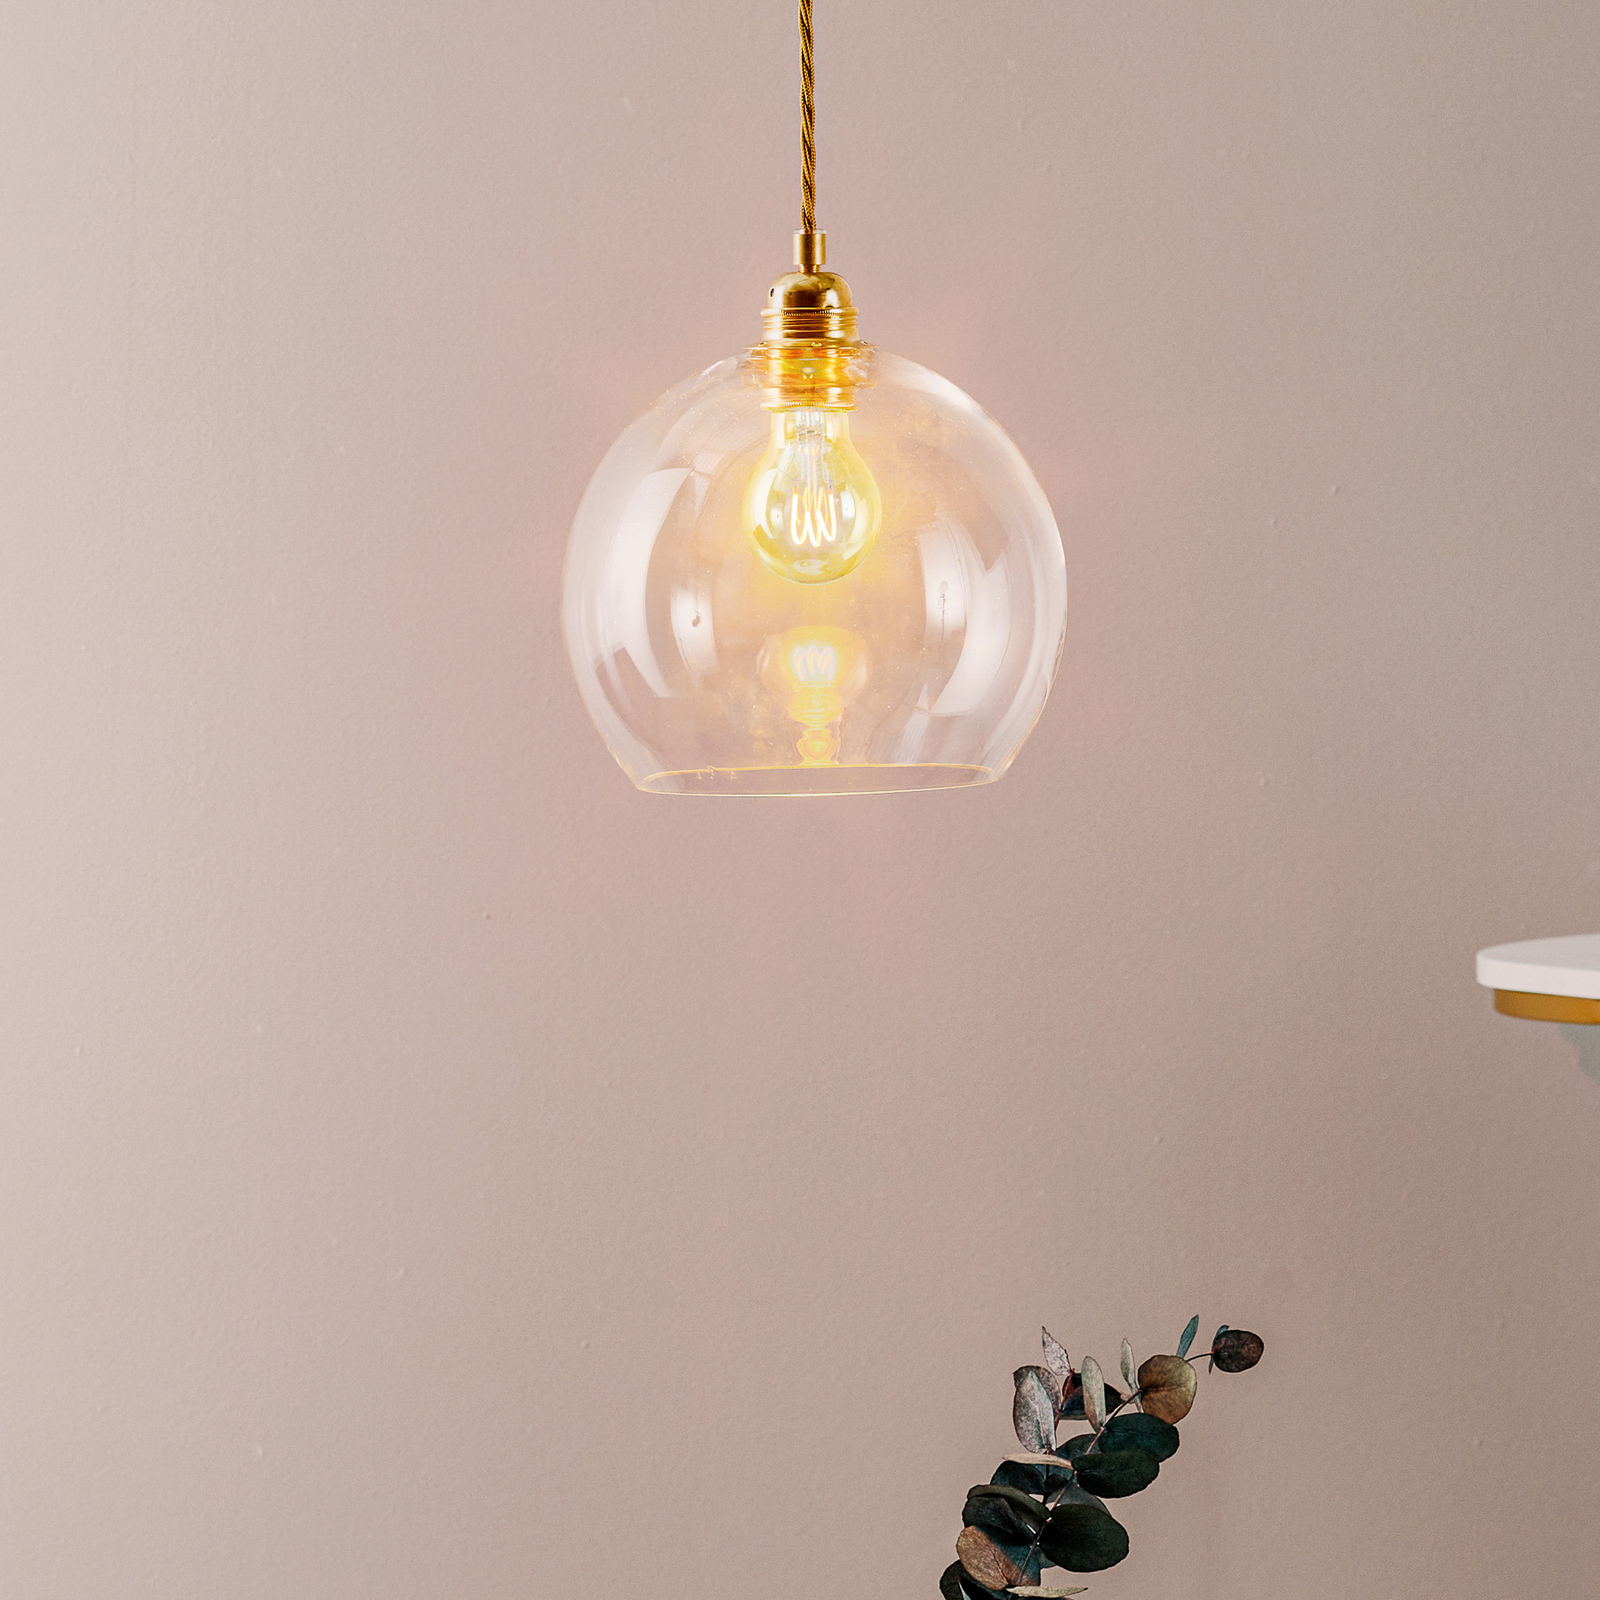 EBB & FLOW Rowan hanglamp helder glas, goud Ø 22cm